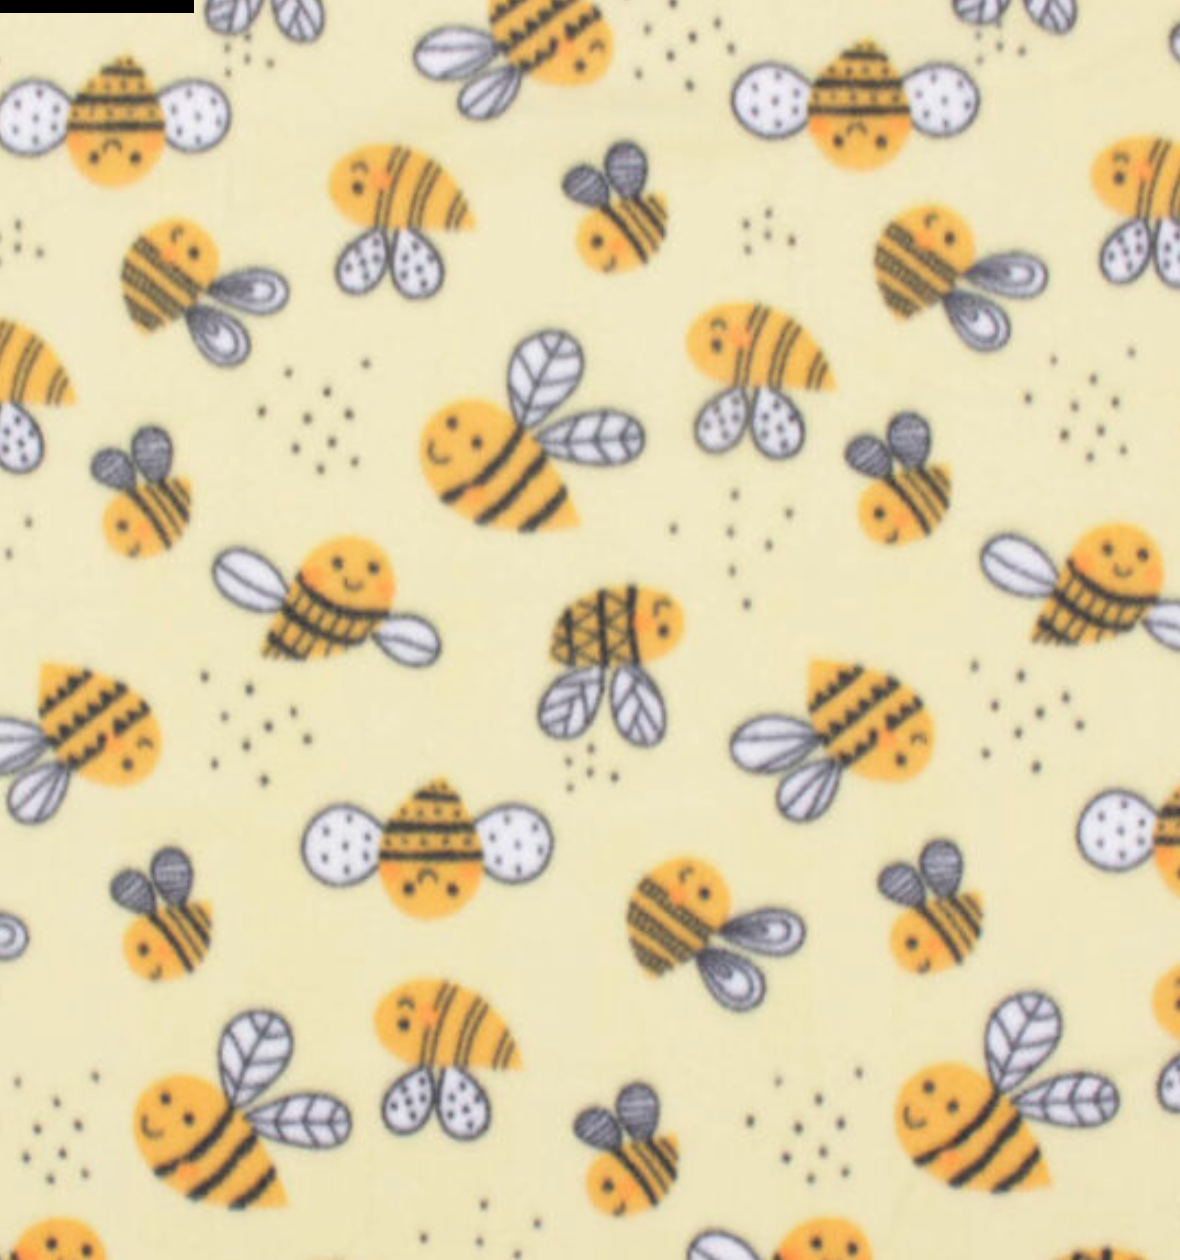 Buzzy Bumble Bees